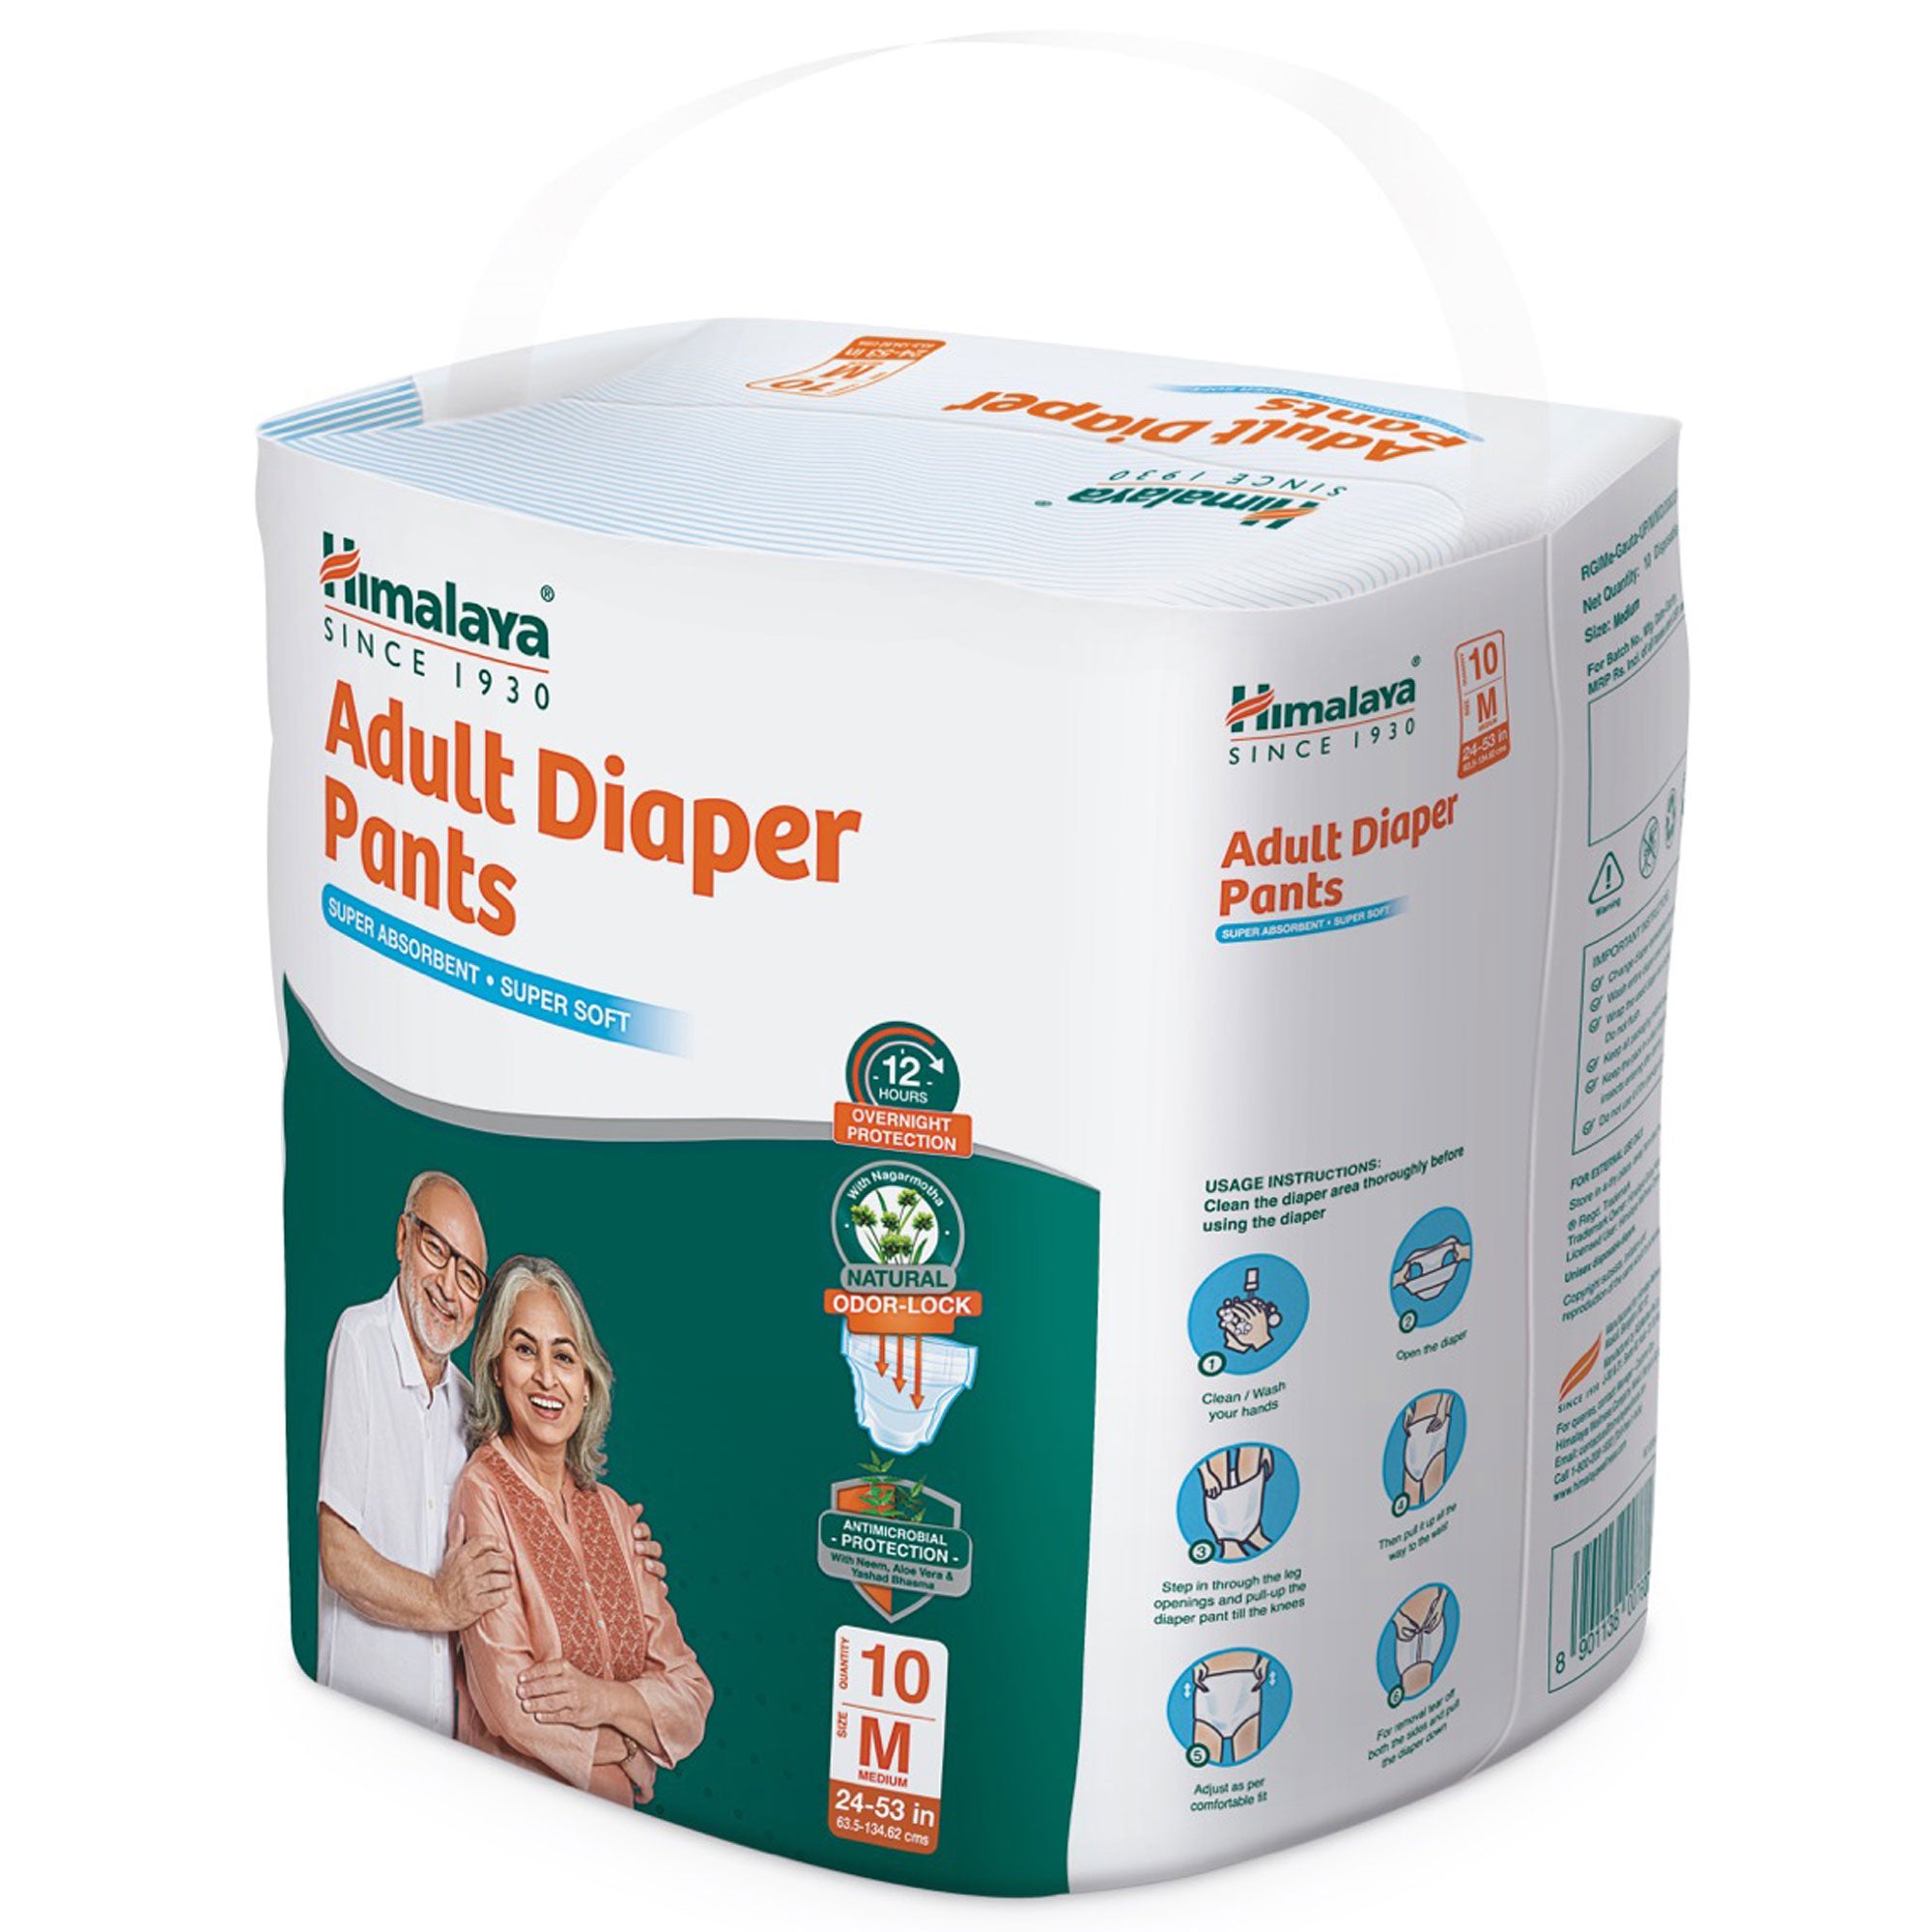  Himalaya Adult Diaper Pants M Cross Pack